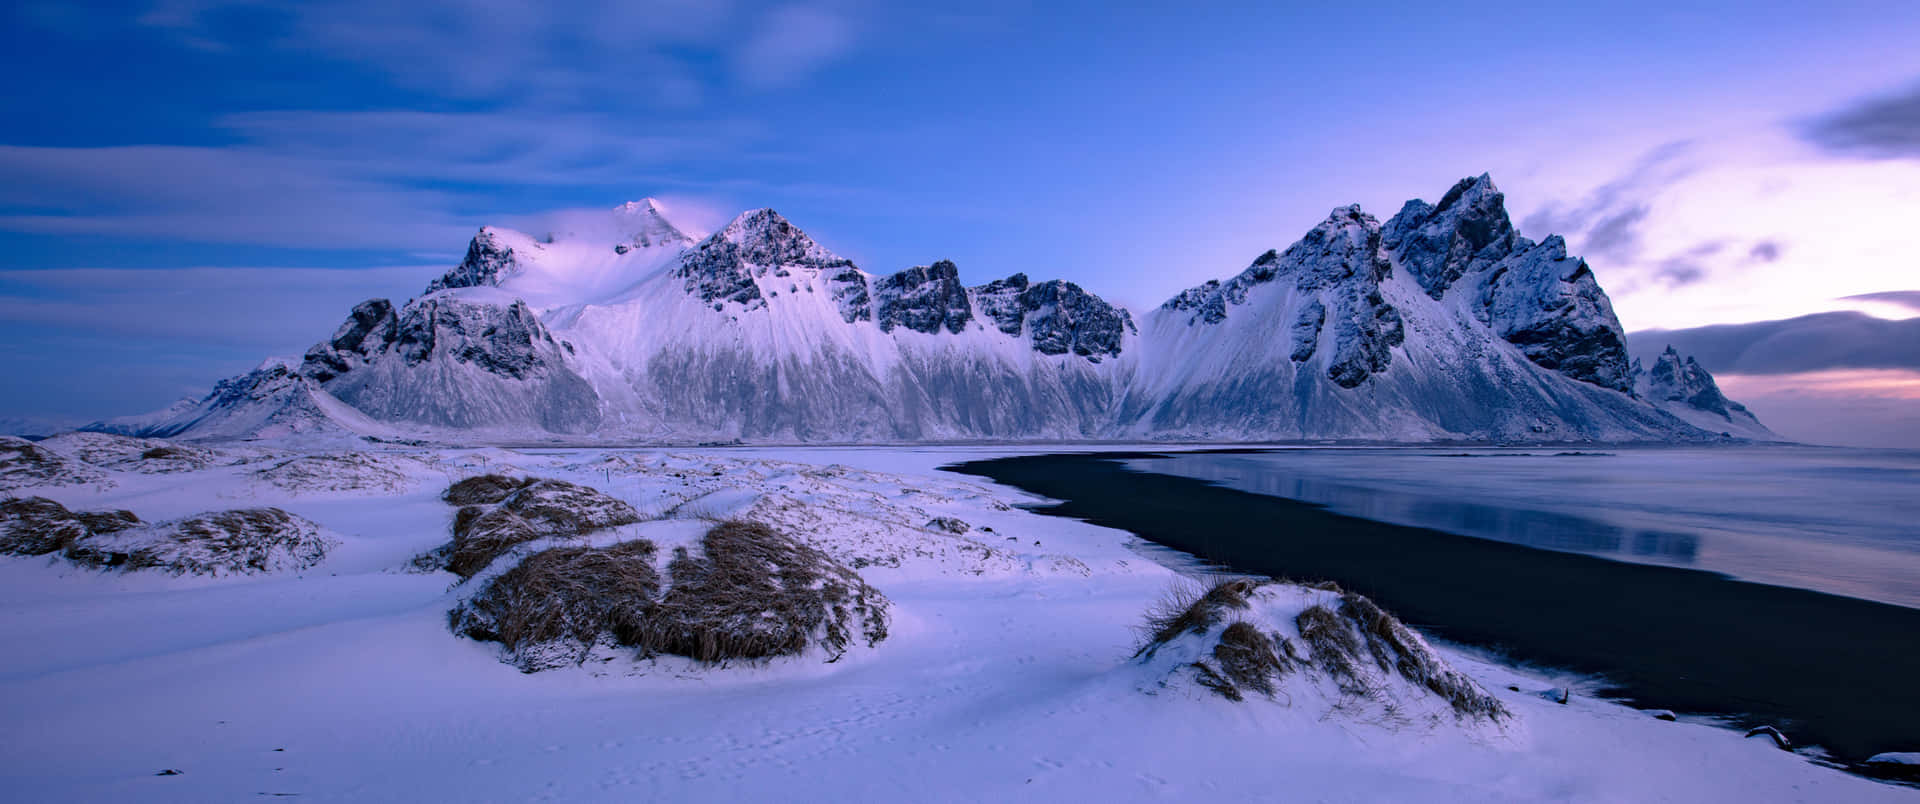 En fantastisk vinterscene af sne-dækkede nåletræer og en rolig sø. Wallpaper